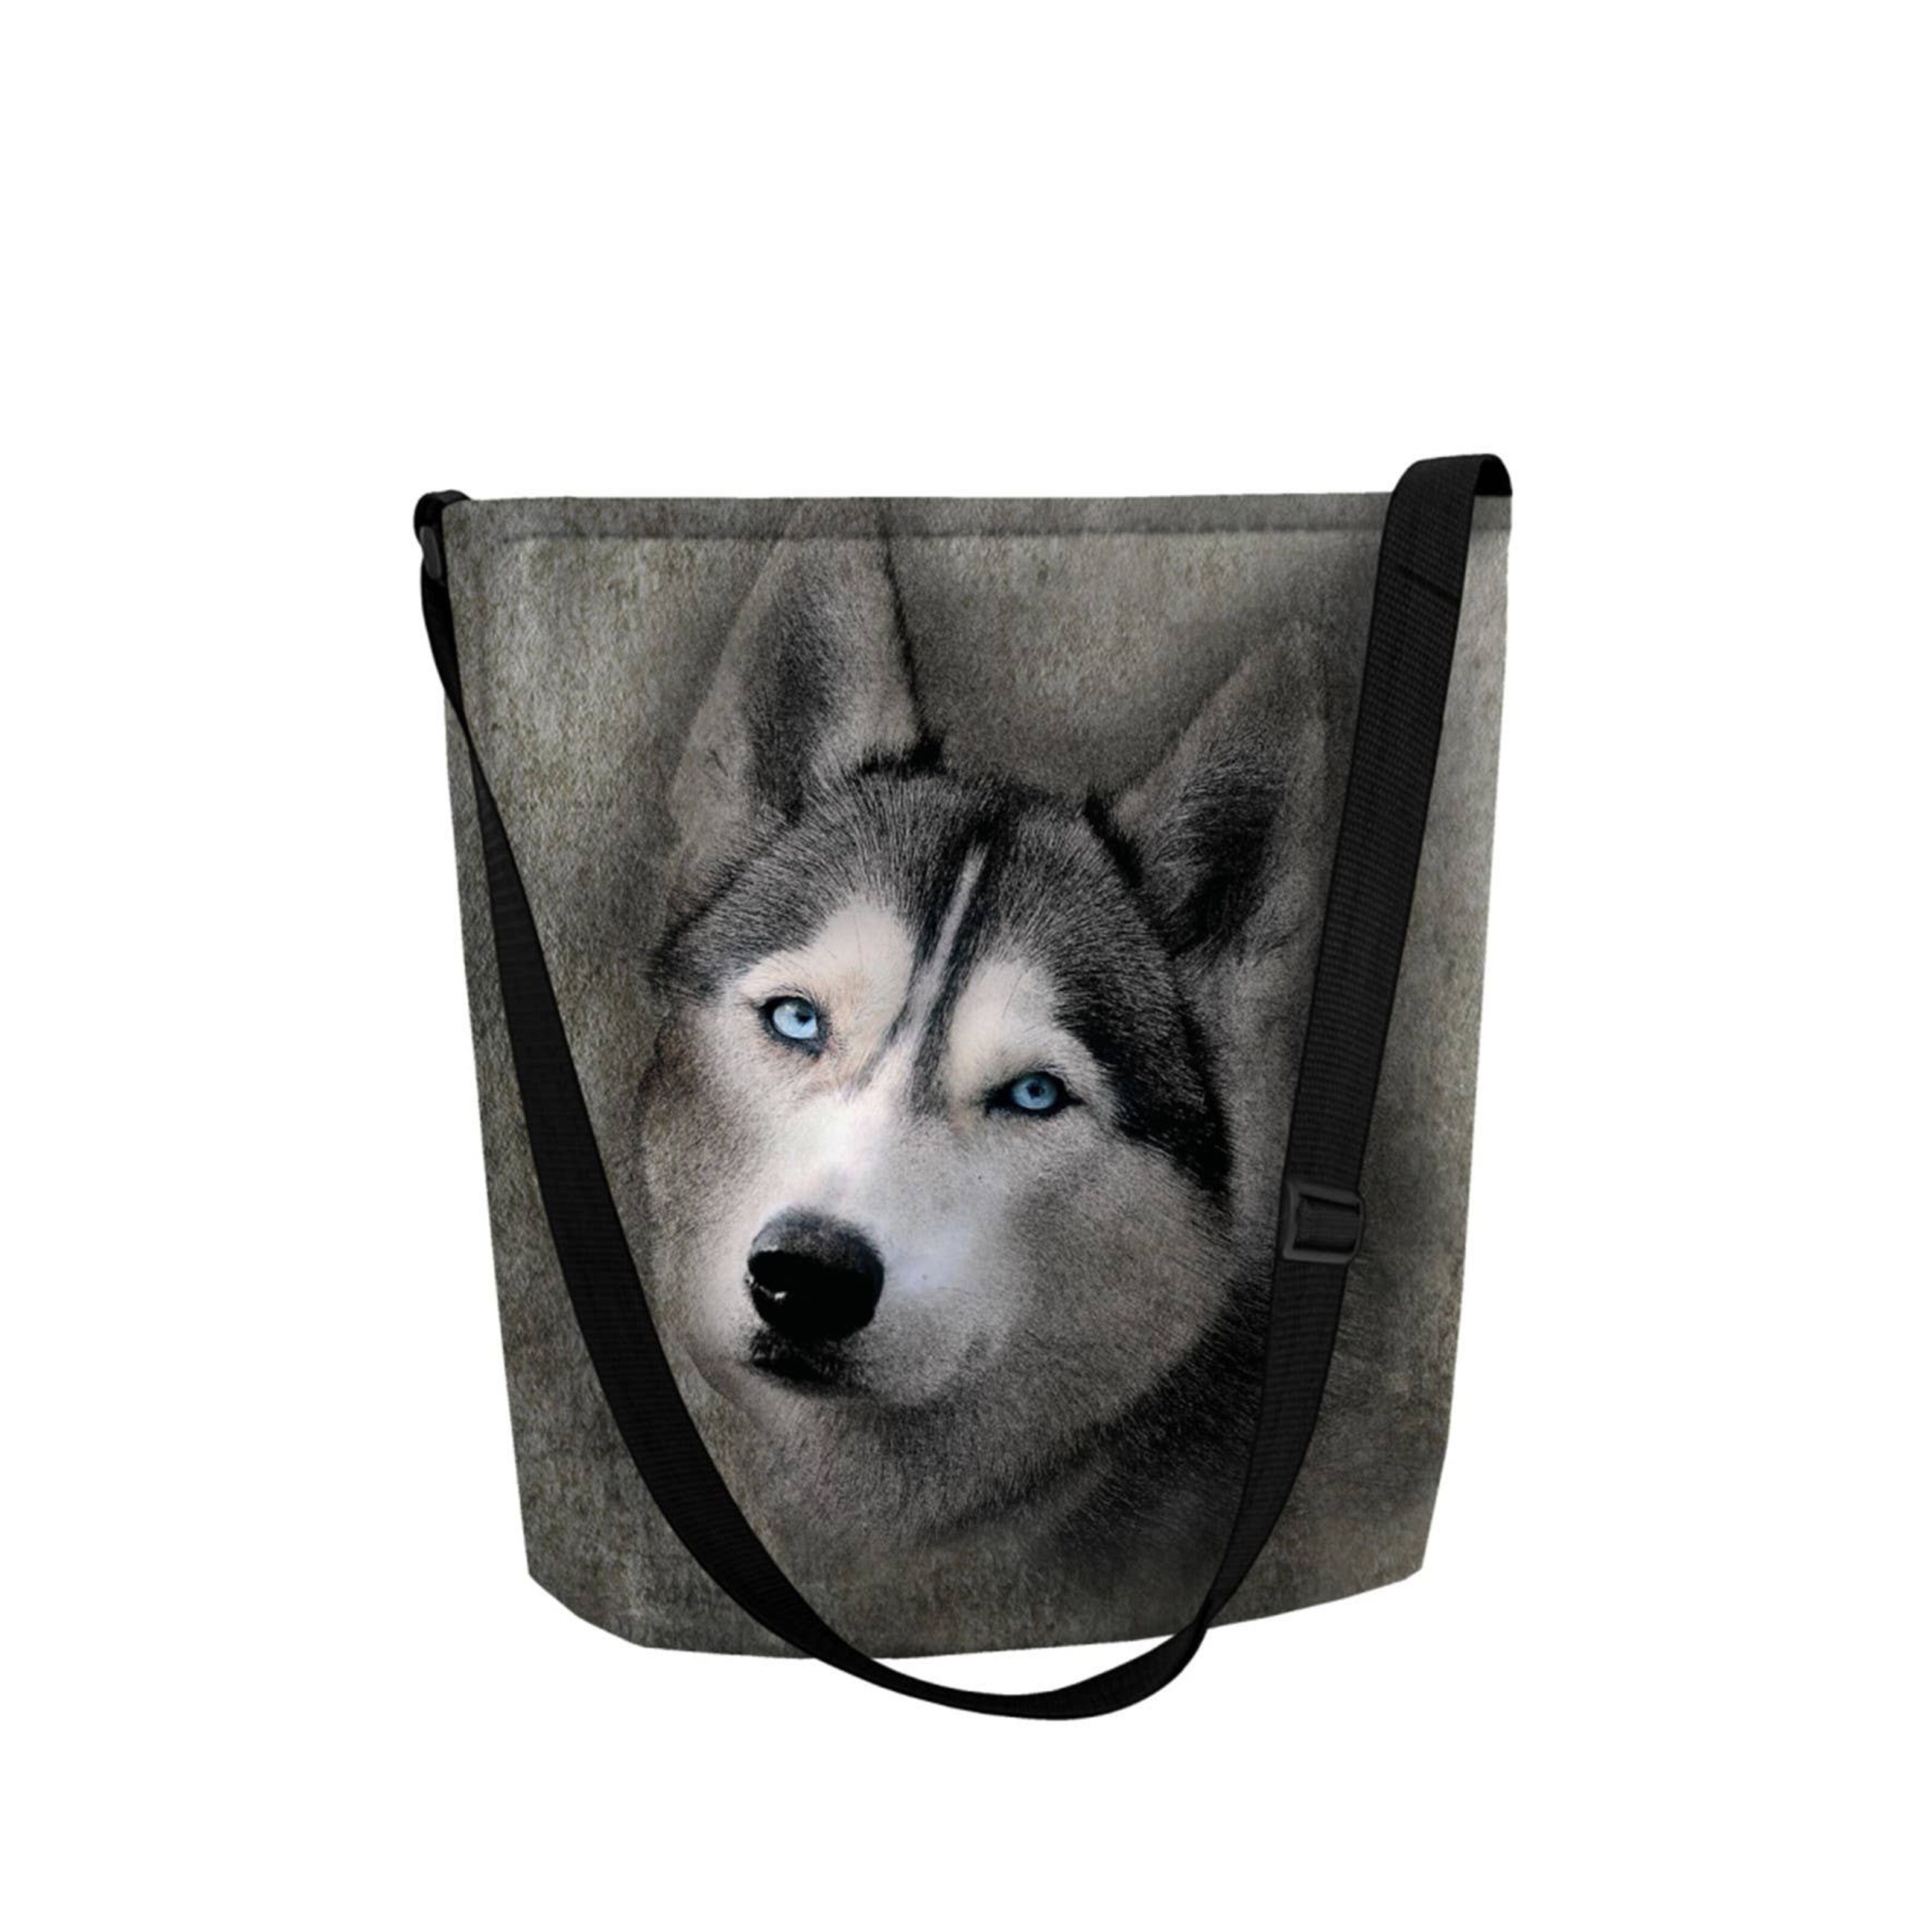 Best Deal for Siberian Husky Dog Mom Women Low Waist Underwear